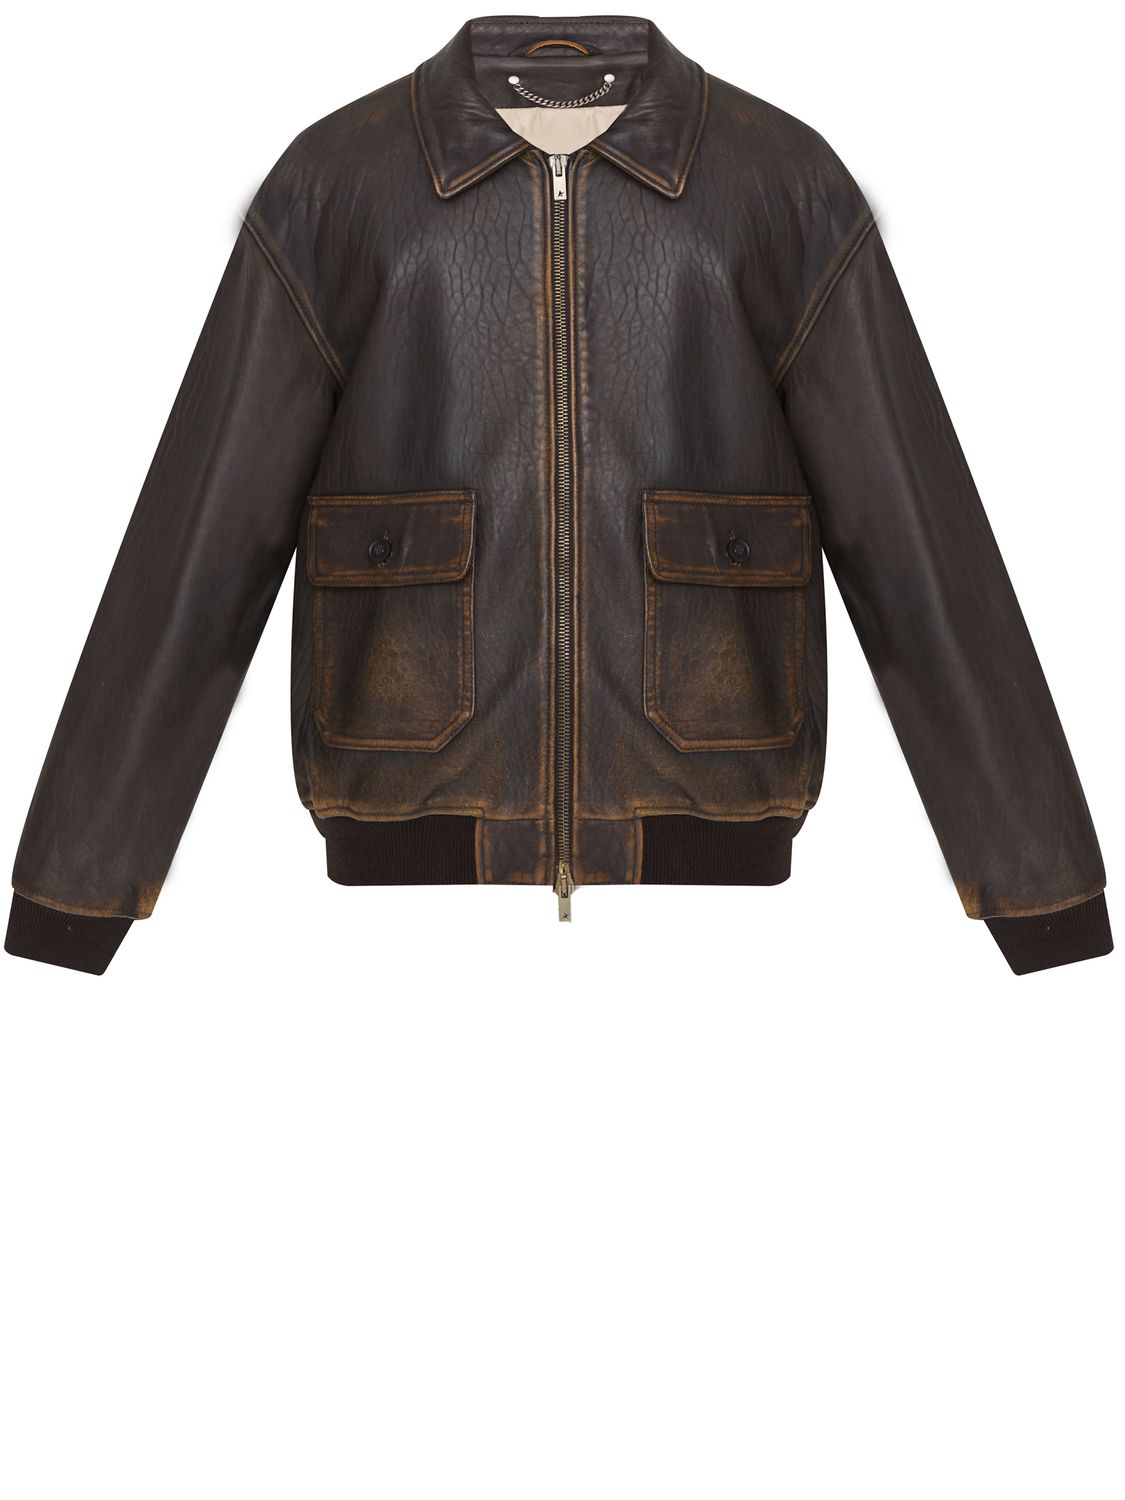 GOLDEN GOOSE Vintage Brown Aviator Jacket for Men